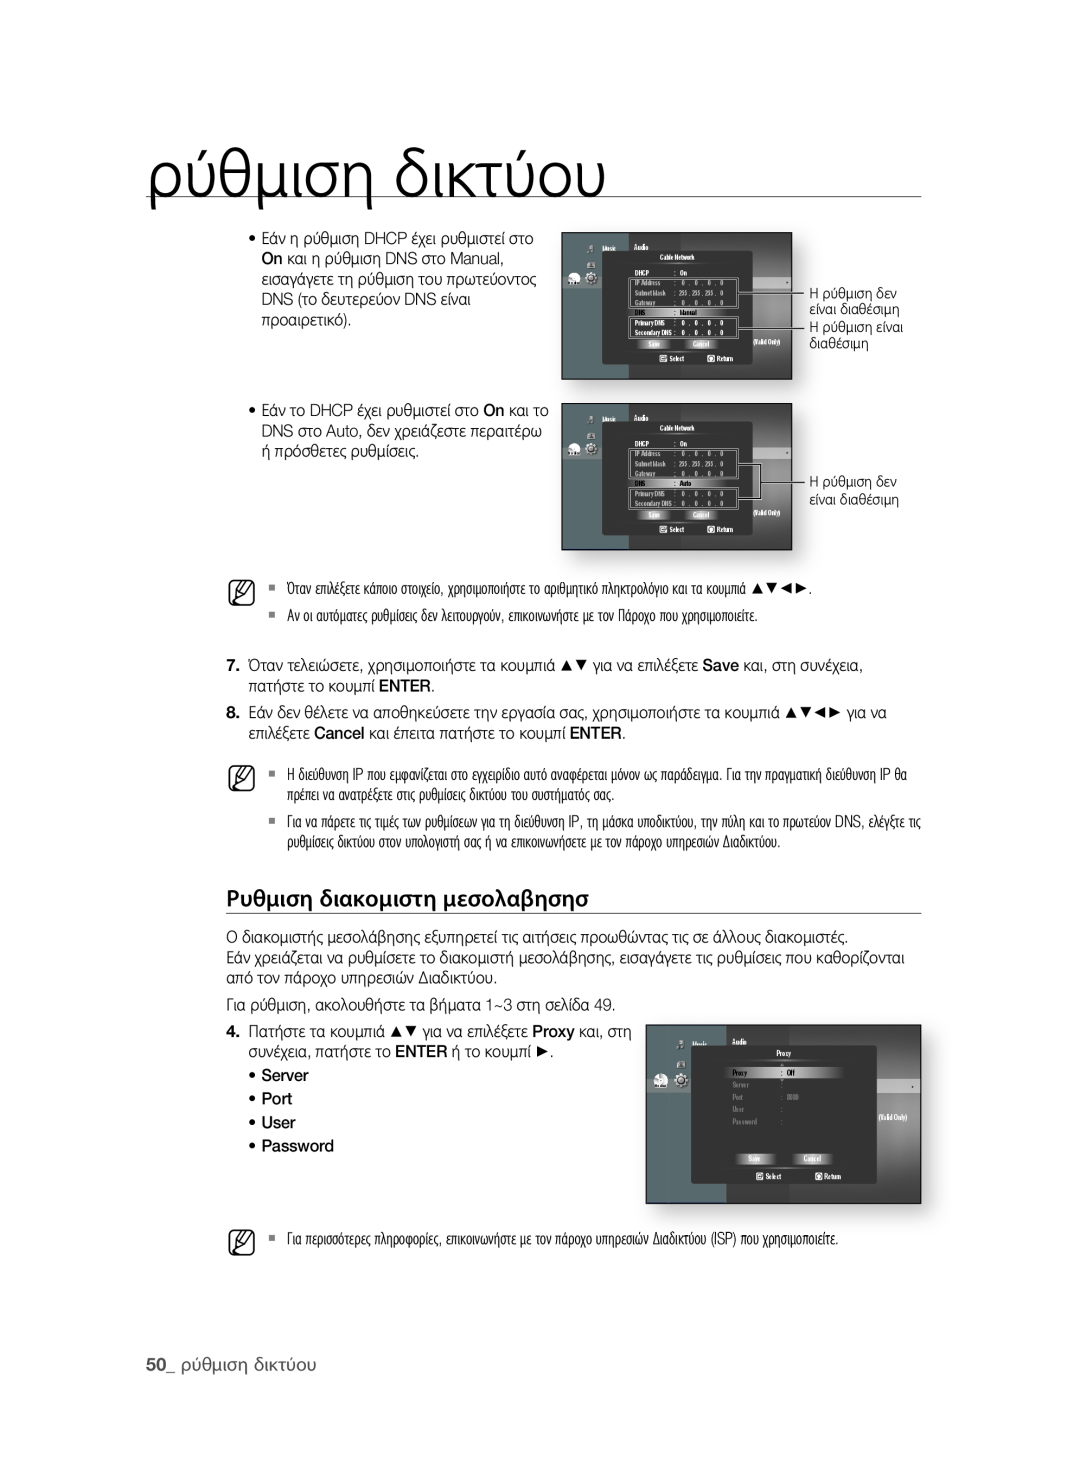 Samsung BD-P1580/EDC manual ρυθμιση διακομιστη μεσολαβησησ, 0 ρύθμιση δικτύου, Server, Port, User, Password 